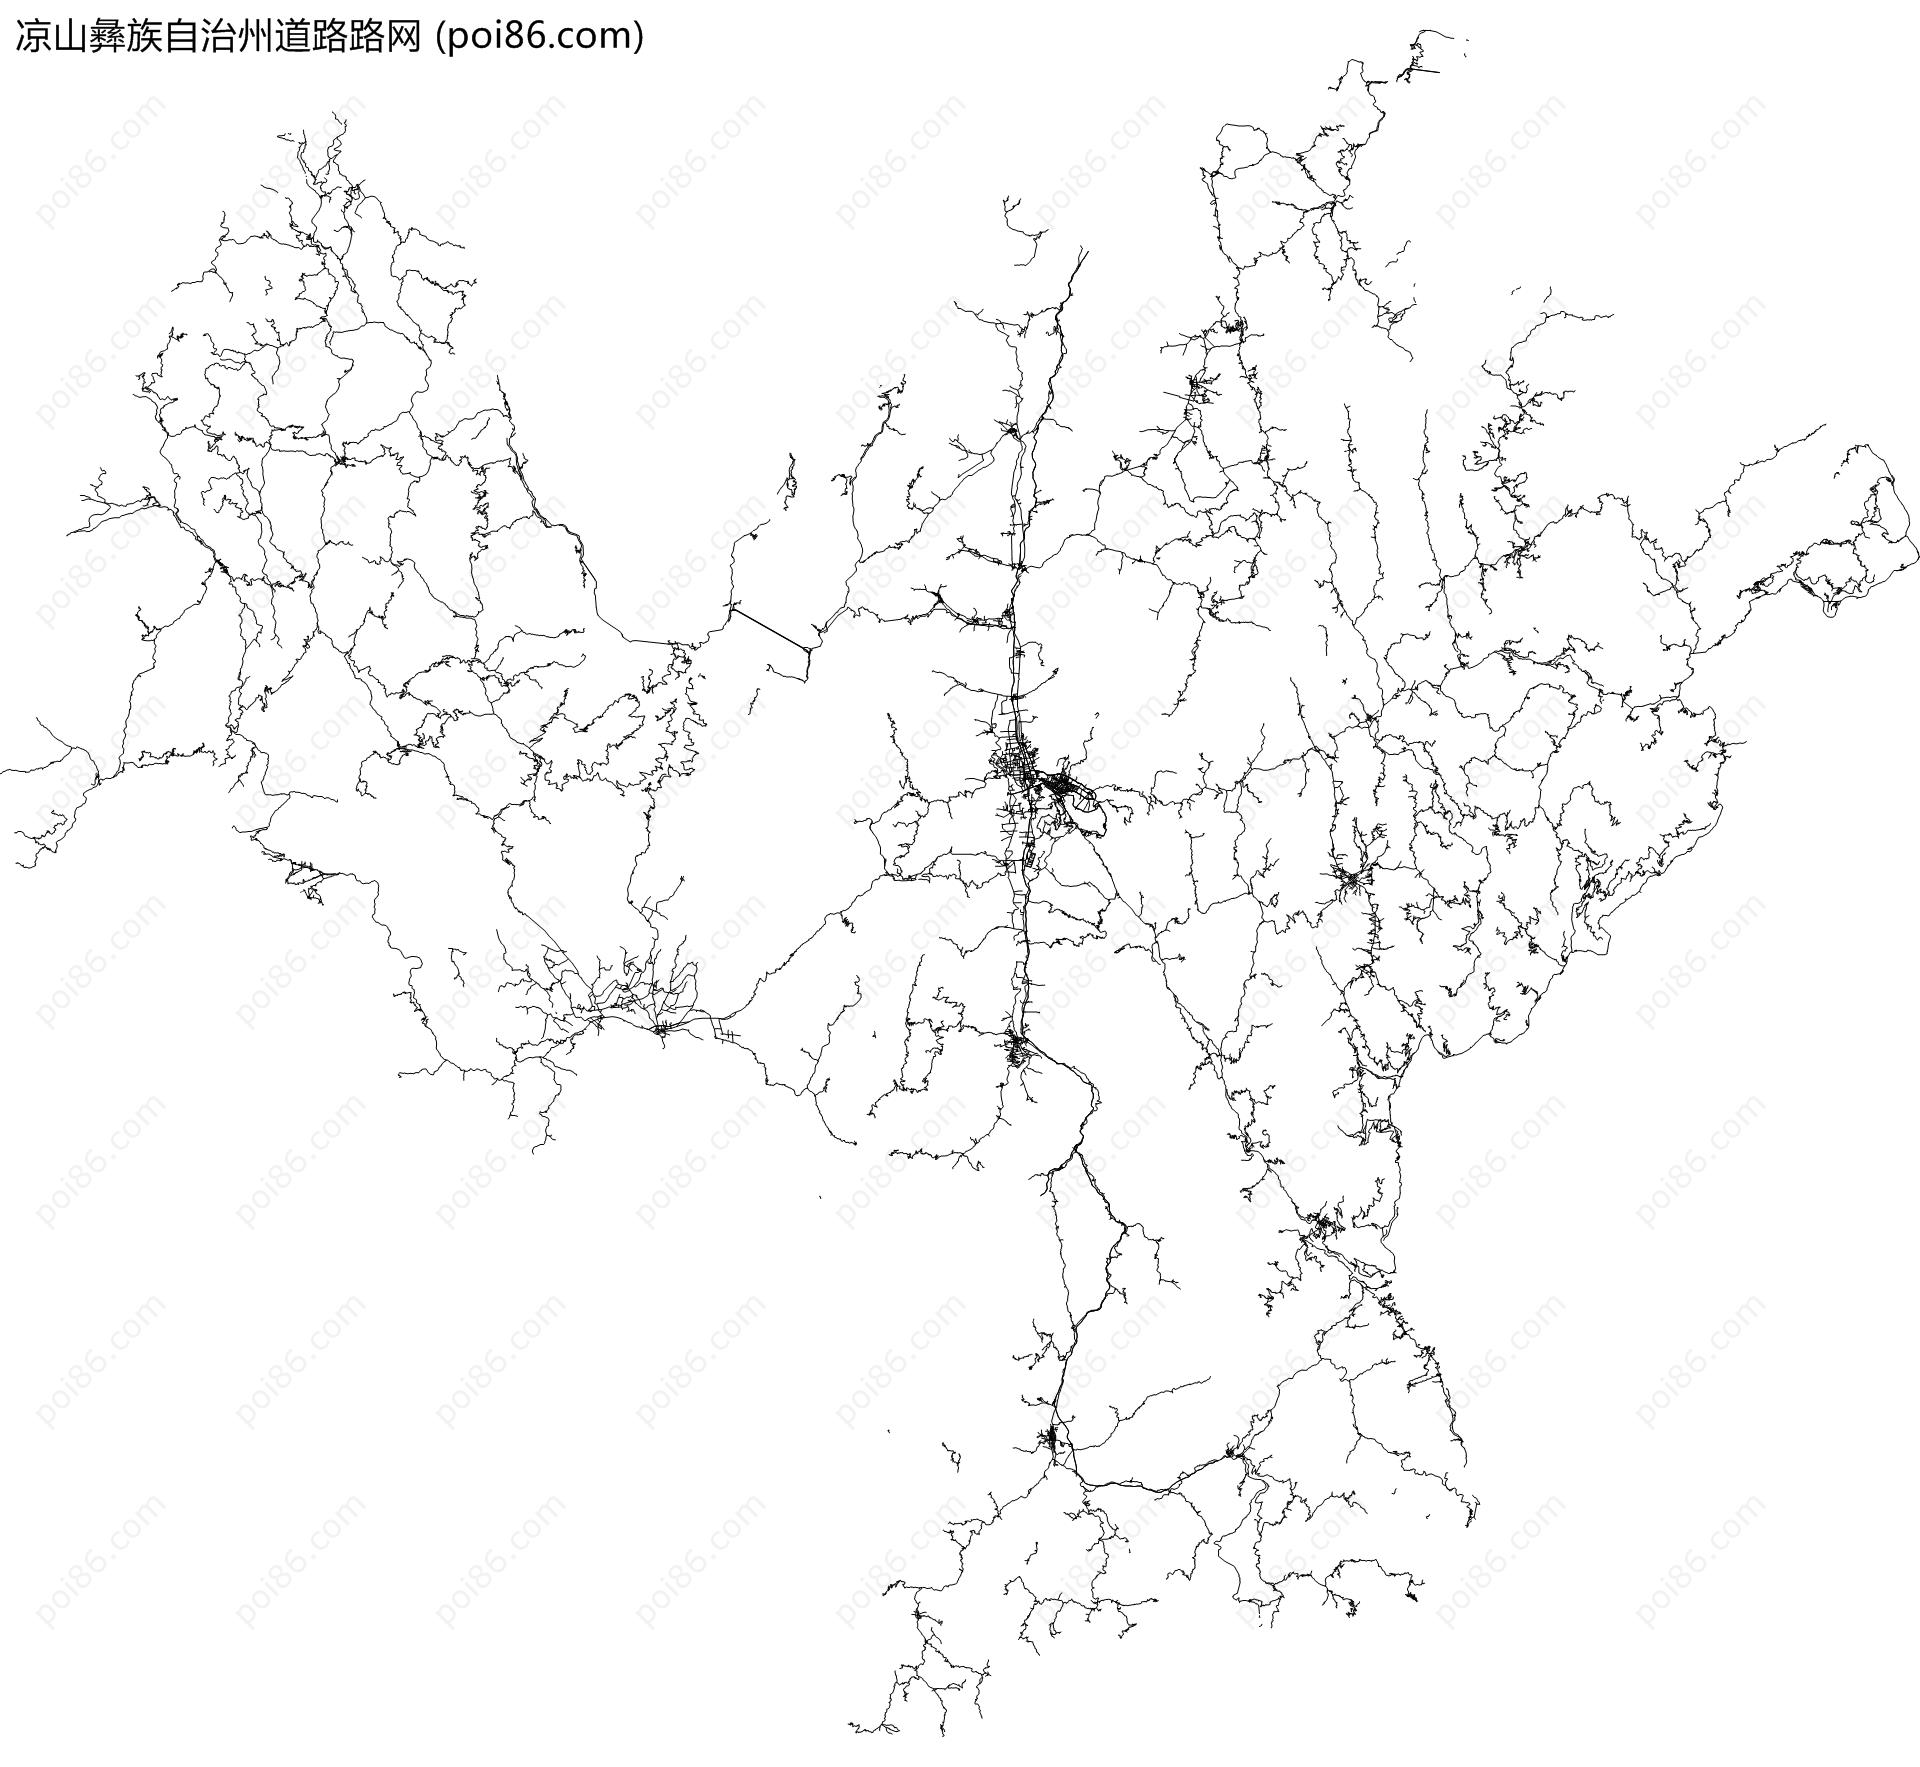 凉山彝族自治州道路路网地图